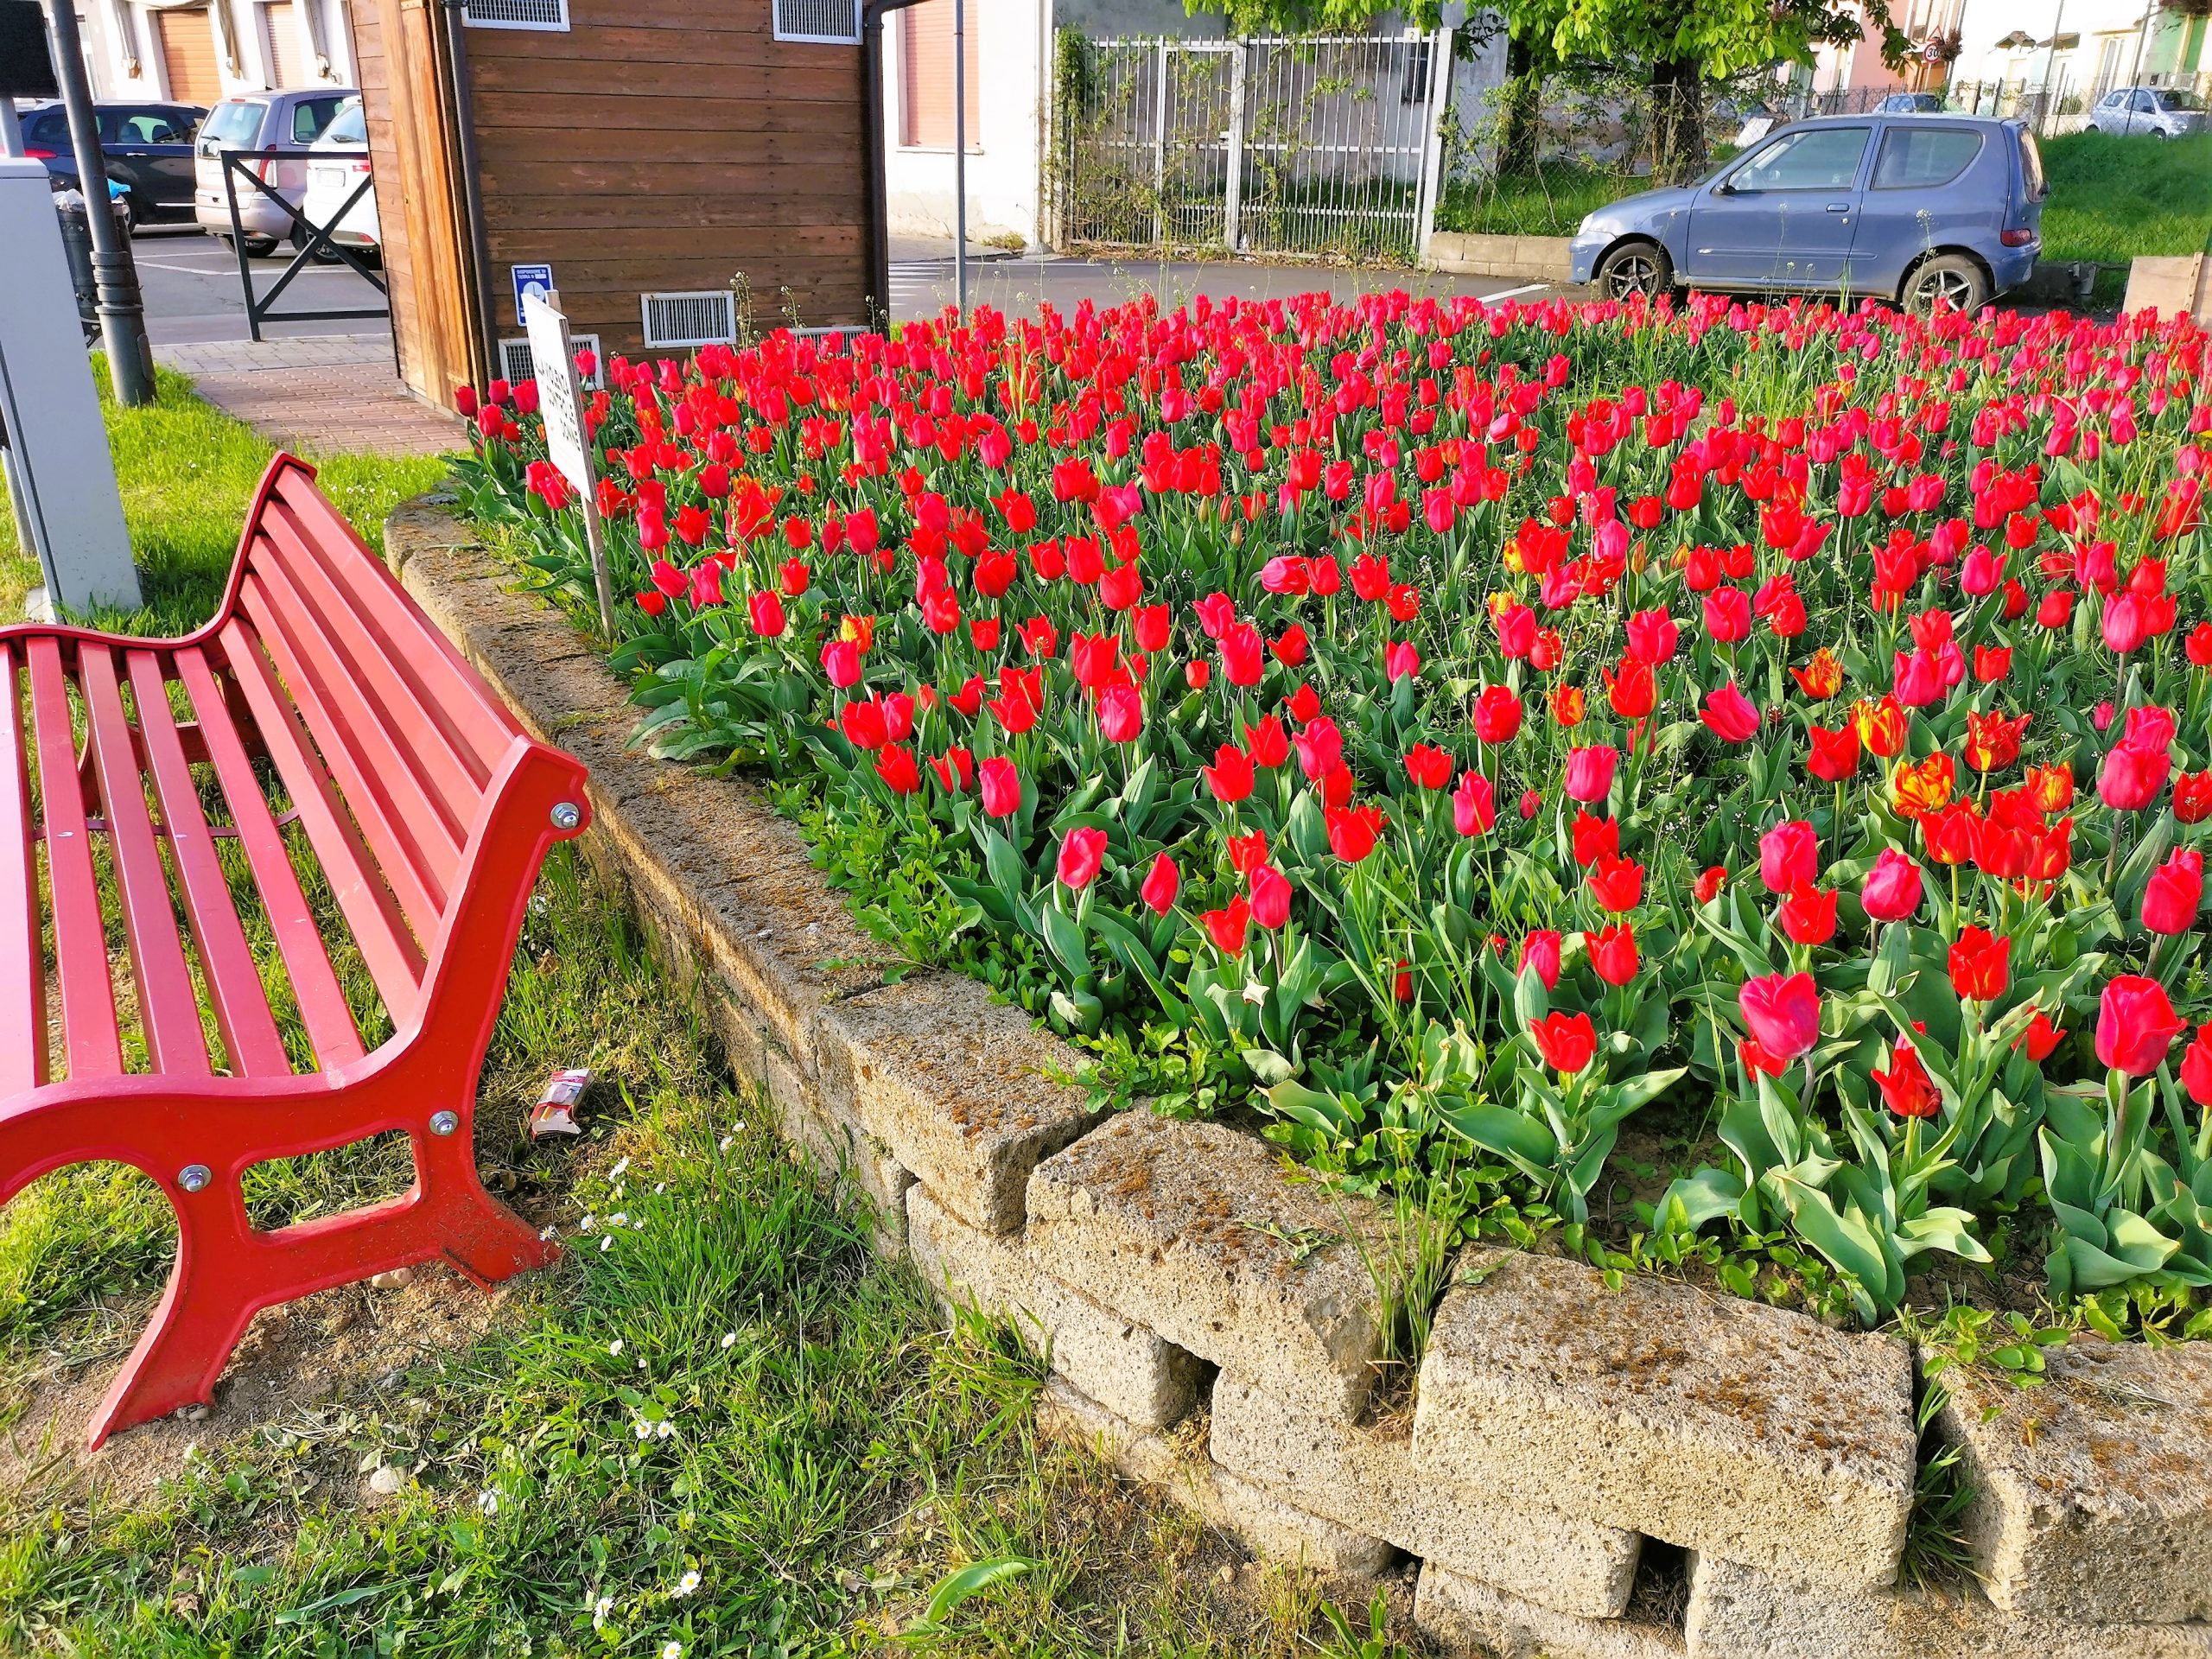 Casale Cremasco Vidolasco, è fiorita anche quest’anno l’aiuola dei 2000 tulipani